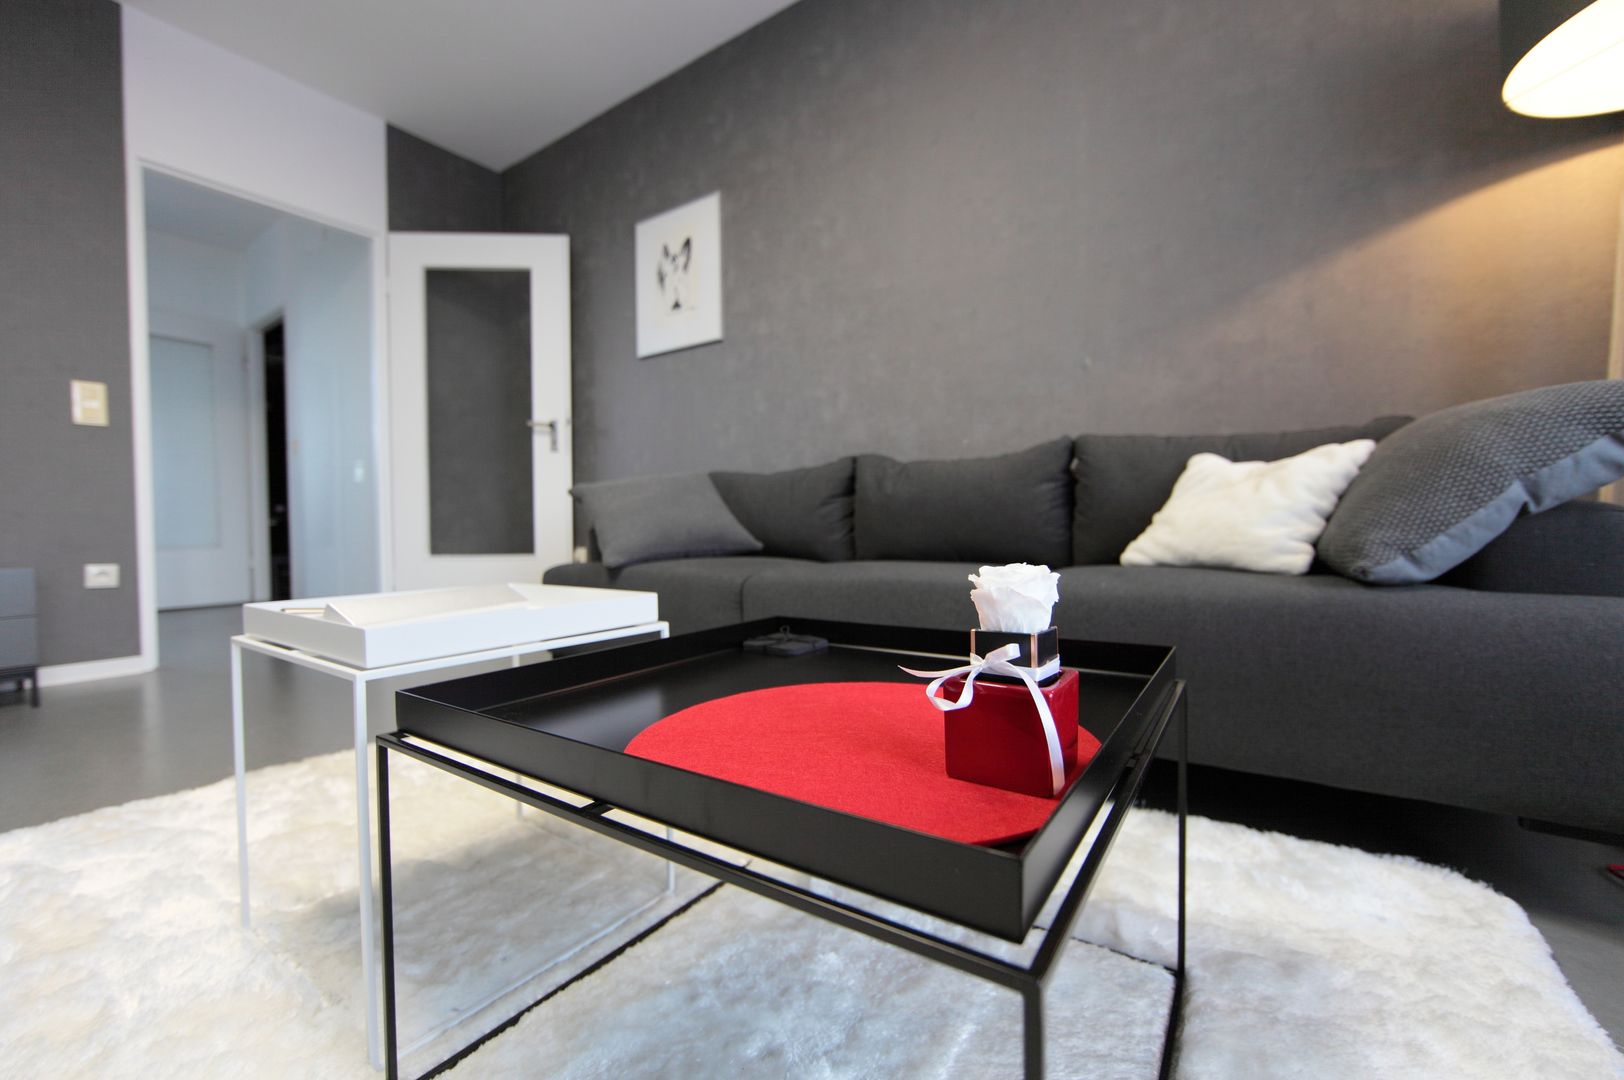 Wohnzimmer mit Kamin und roten Akzenten, nadine buslaeva interior design nadine buslaeva interior design Minimalist living room